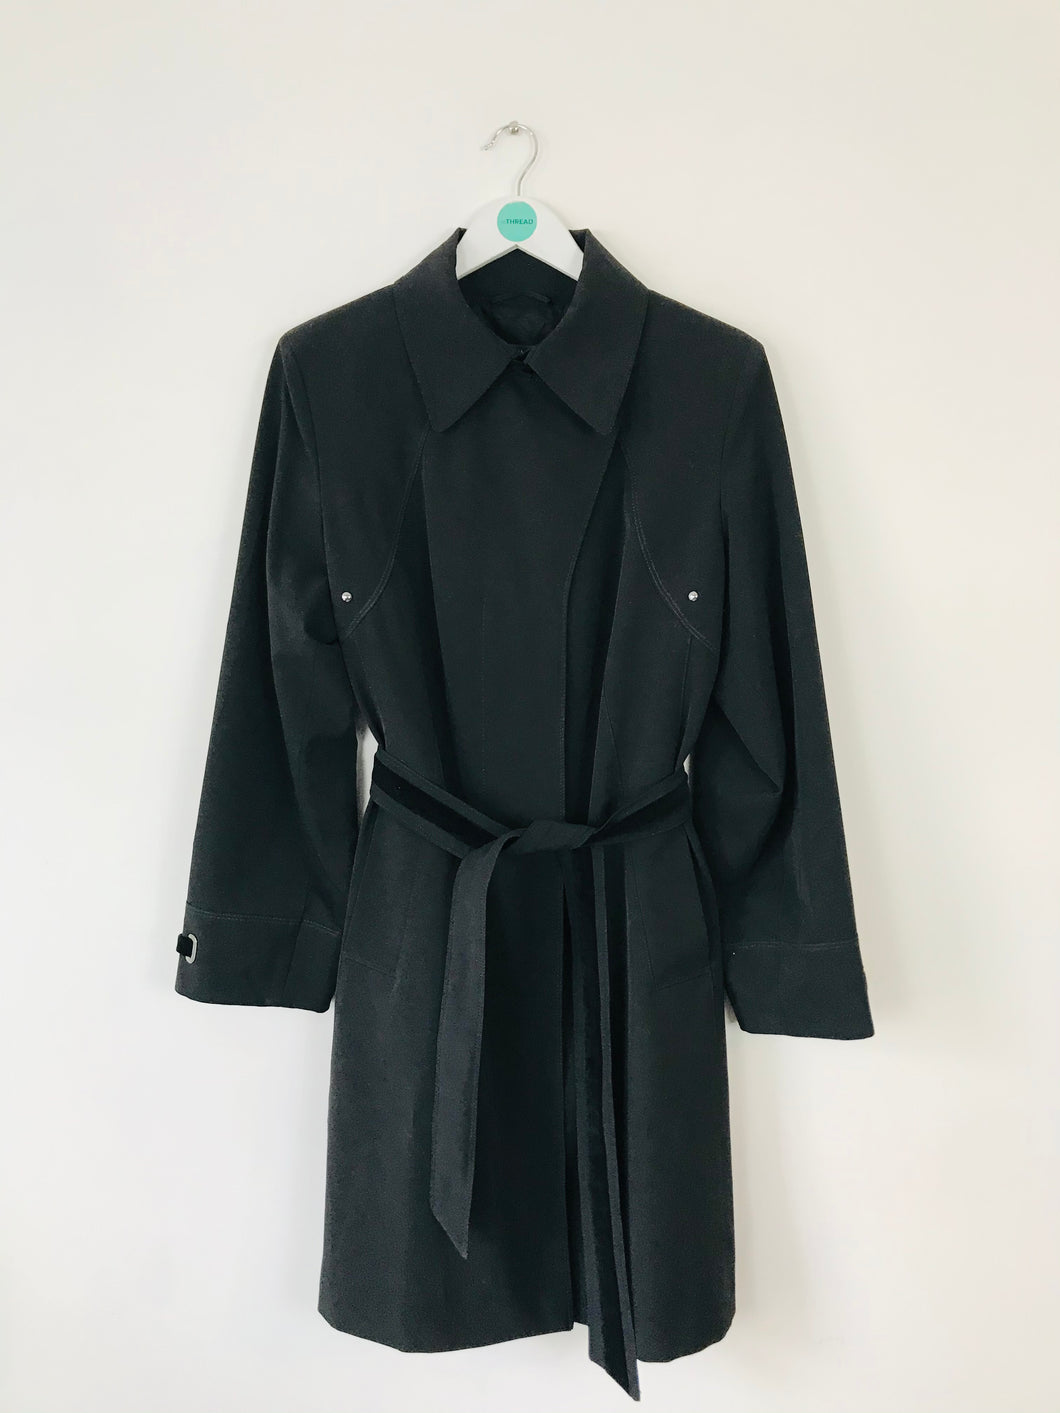 Marina Rinaldi Women’s Tie Overcoat | 21 UK16 | Black